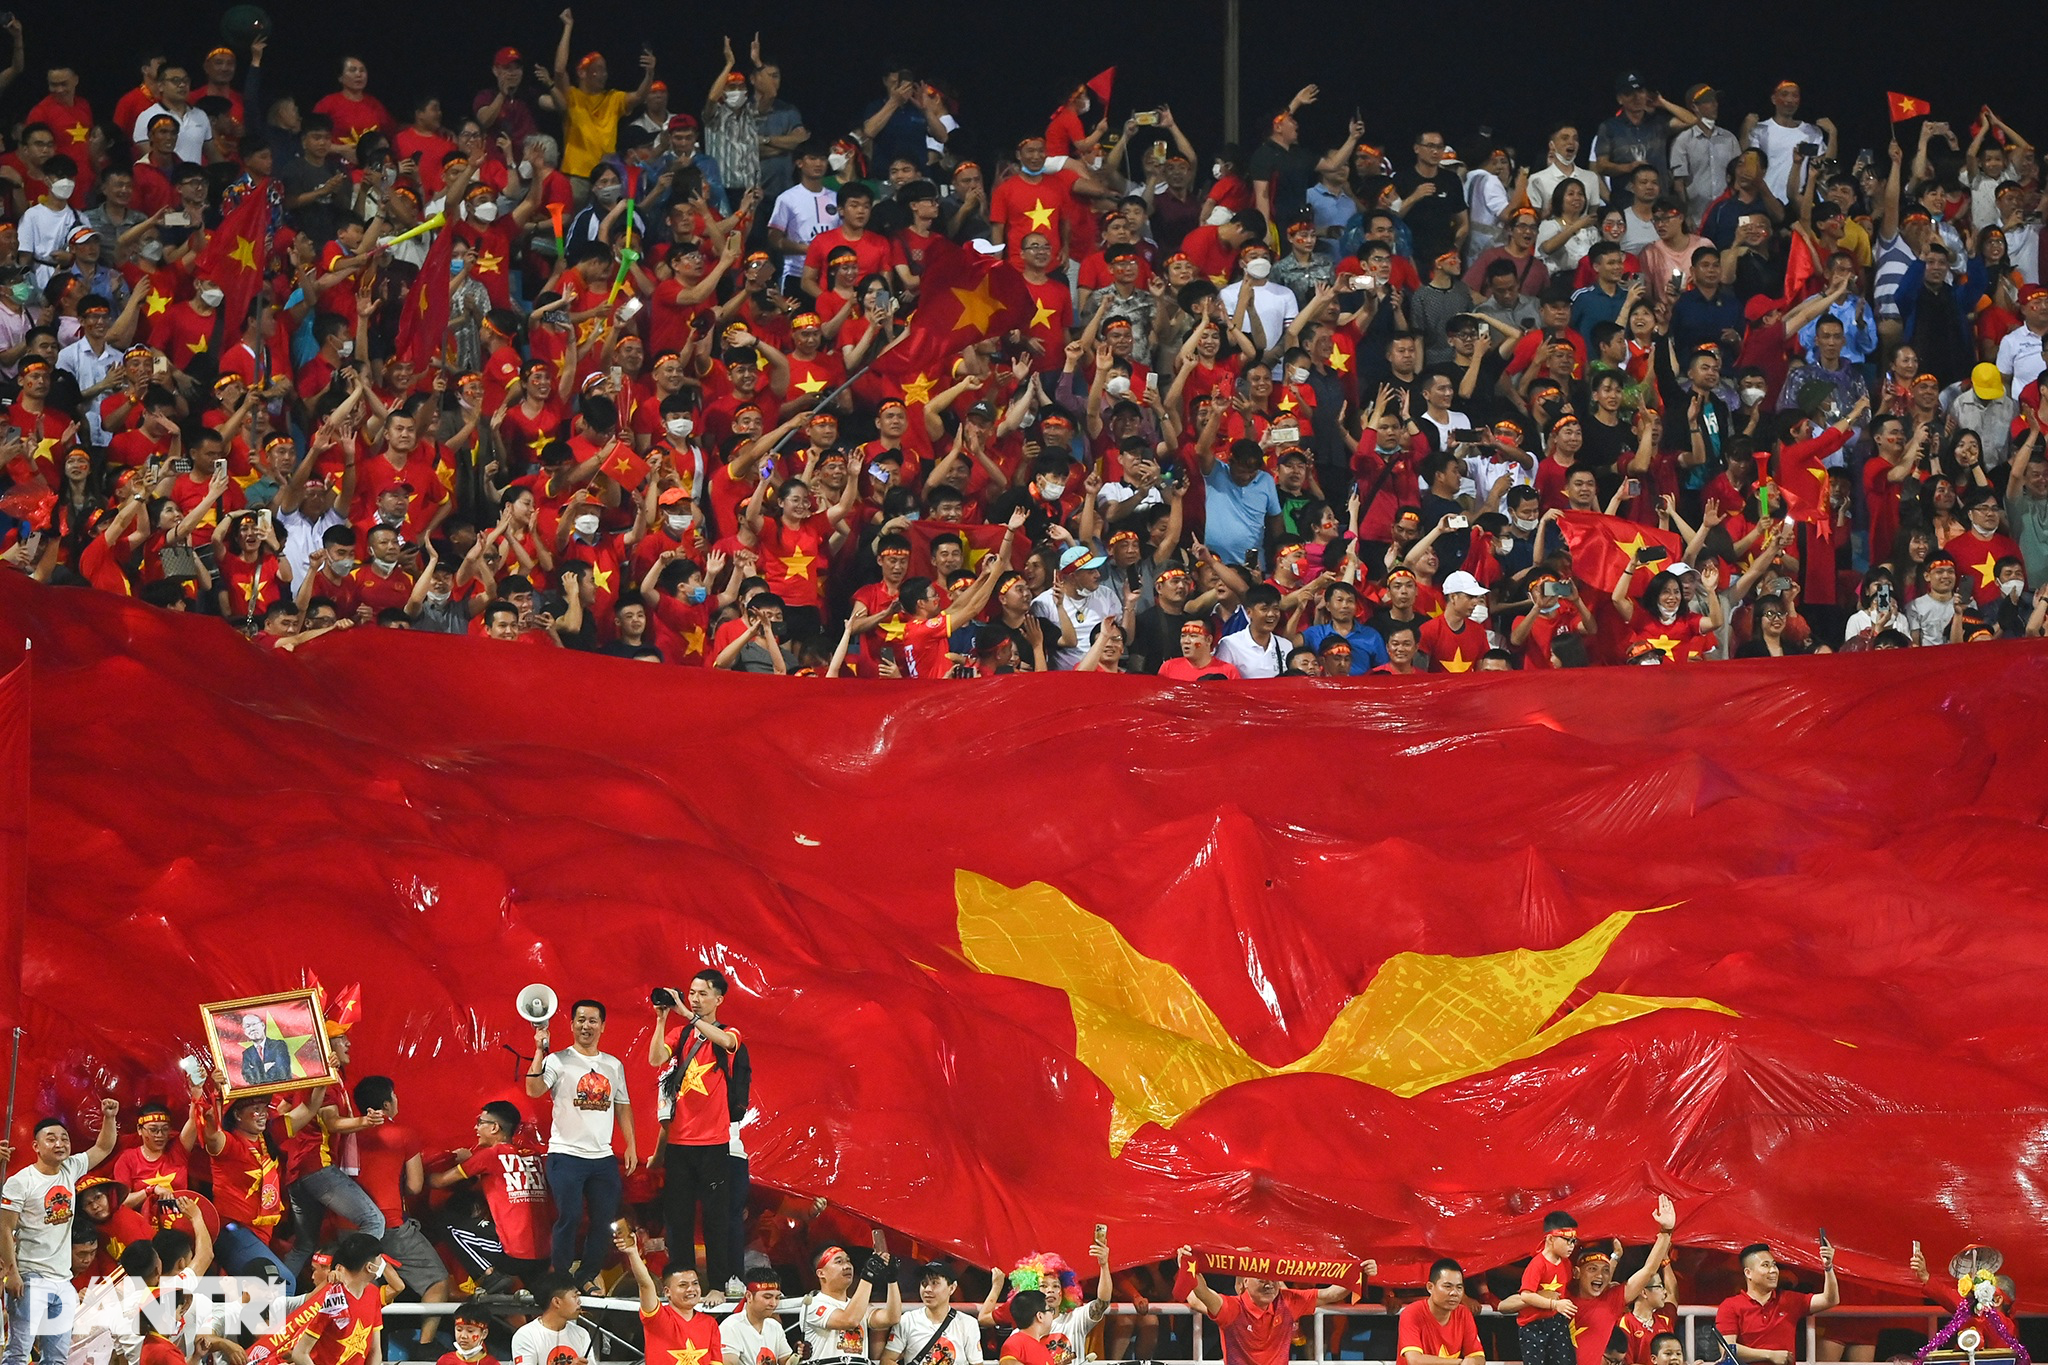 U23 Việt Nam đã gặt hái được rất nhiều thành công trên sân đấu quốc tế và trở thành niềm tự hào của cả đất nước. Hãy cùng đưa mắt đến sân cỏ và theo dõi các trận đấu hấp dẫn của đội tuyển này. Bạn sẽ cảm nhận được niềm đam mê và niềm kiêu hãnh của người Việt Nam khi chúng ta cùng cổ vũ cho chiến thắng.